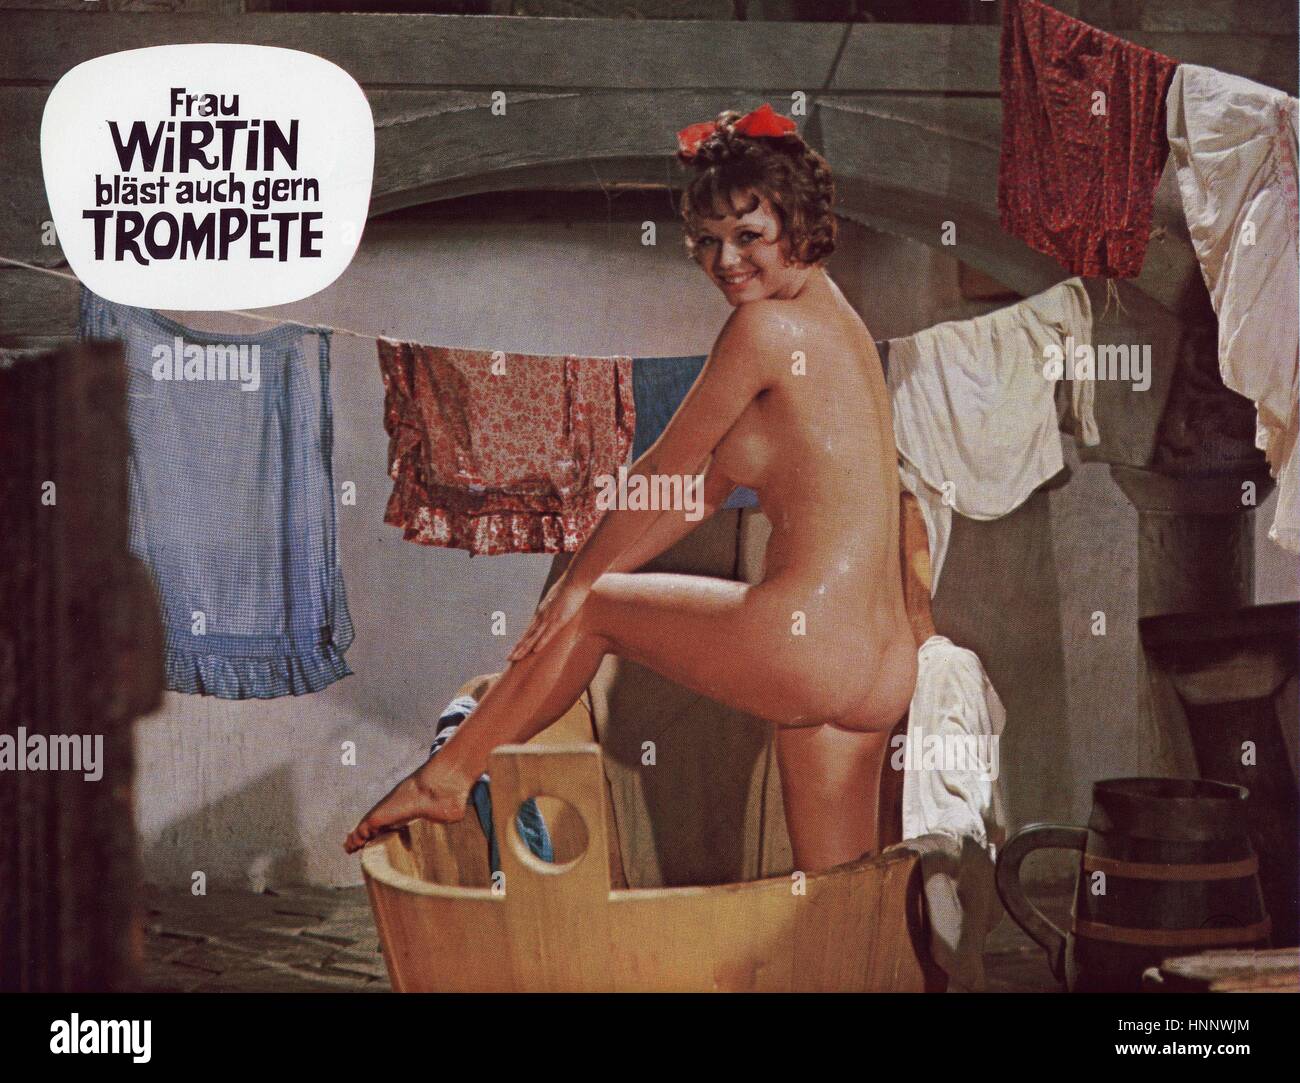 Frau Wirtin Blast Auch Gern Trompete Osterreich Deutschland Italien 1970 Regie Franz Antel Szenenfoto Stock Photo Alamy